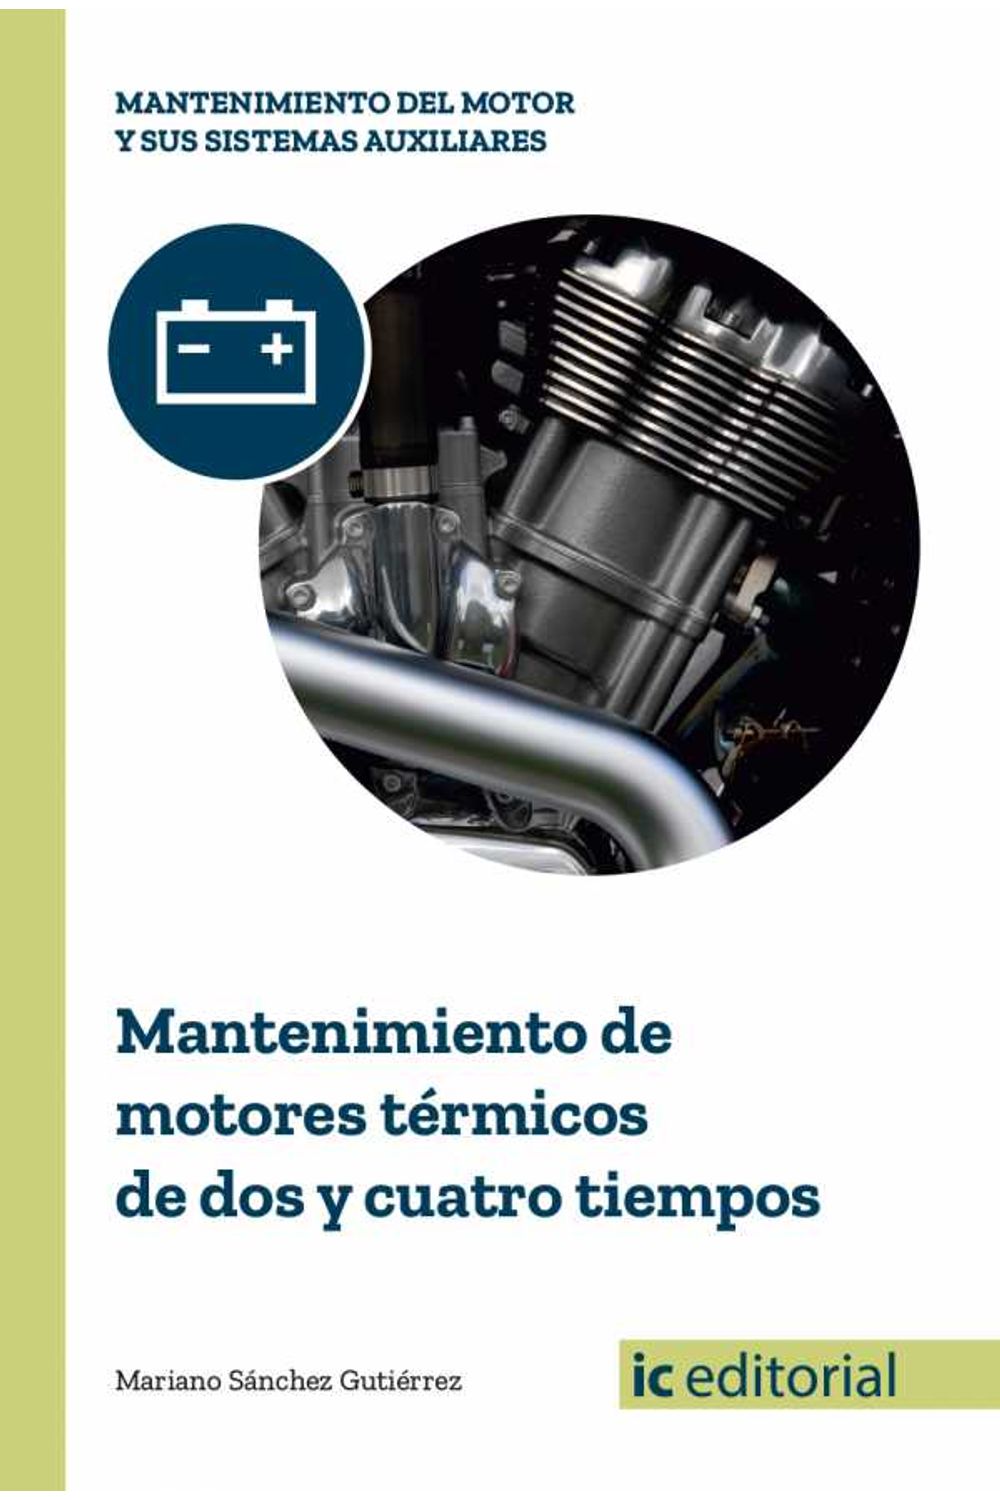 bm-mantenimiento-de-motores-termicos-de-dos-y-cuatro-tiempos-ic-editorial-9788491980094